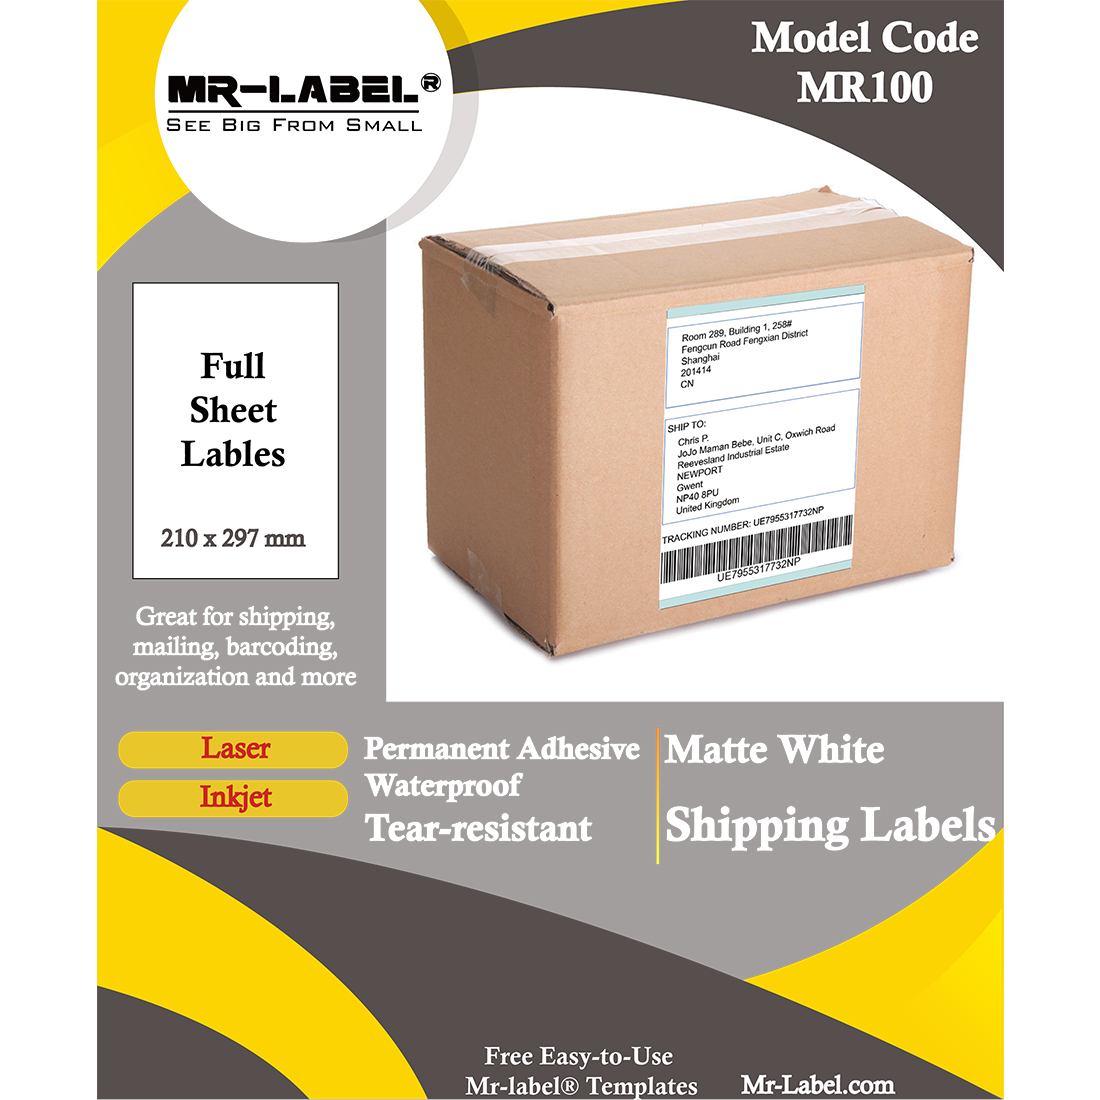 Sommerhus haj Pjece Mr-Label Full A4 Sheet Matte White Labels – Outdoor Label | Shipping Label  | Parcel Labels – for Inkjet & Laser Printer – Waterproof and  Tear-Resistant – MR-LABEL